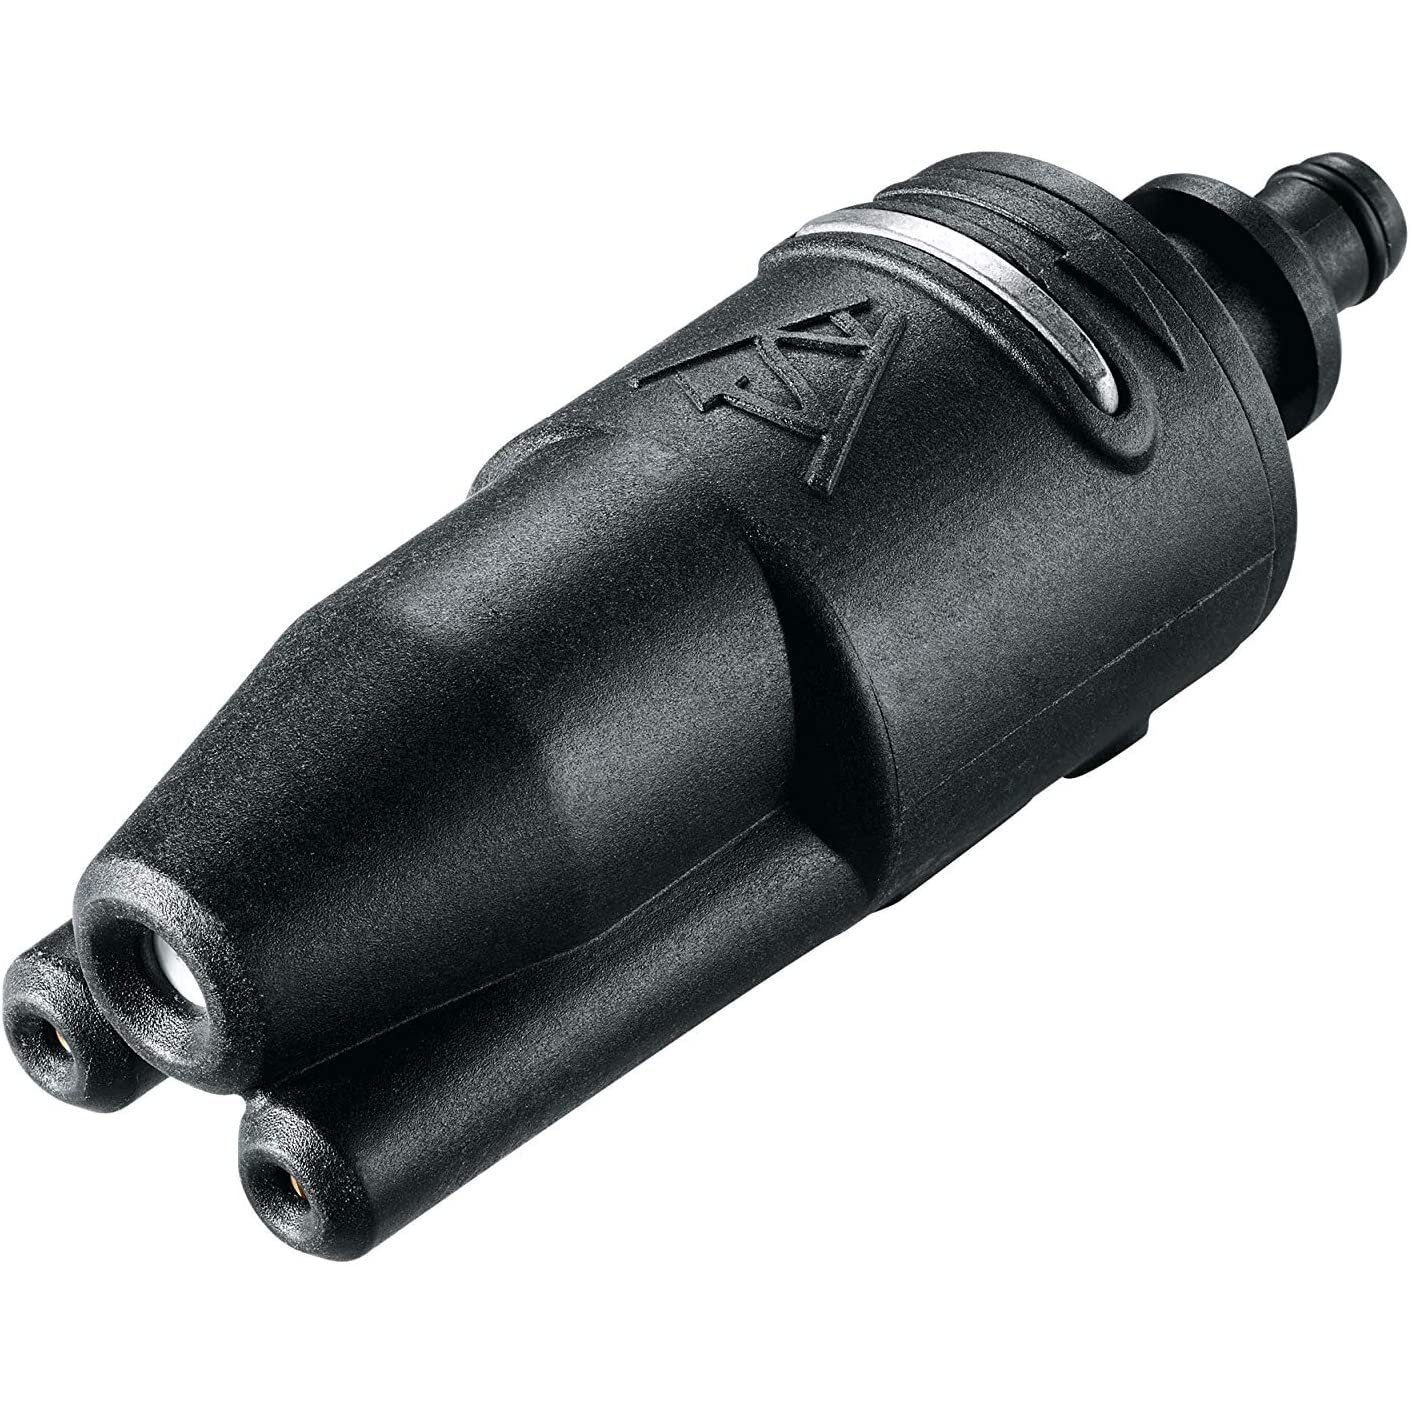 Bosch Trio Nozzle (Compatible with Bosch Pressure Washers: EasyAquatak 110/120, UniversalAquatak 125/130/135, AQT 33-10, AQT 33-11, AQT 35-12, AQT 37-